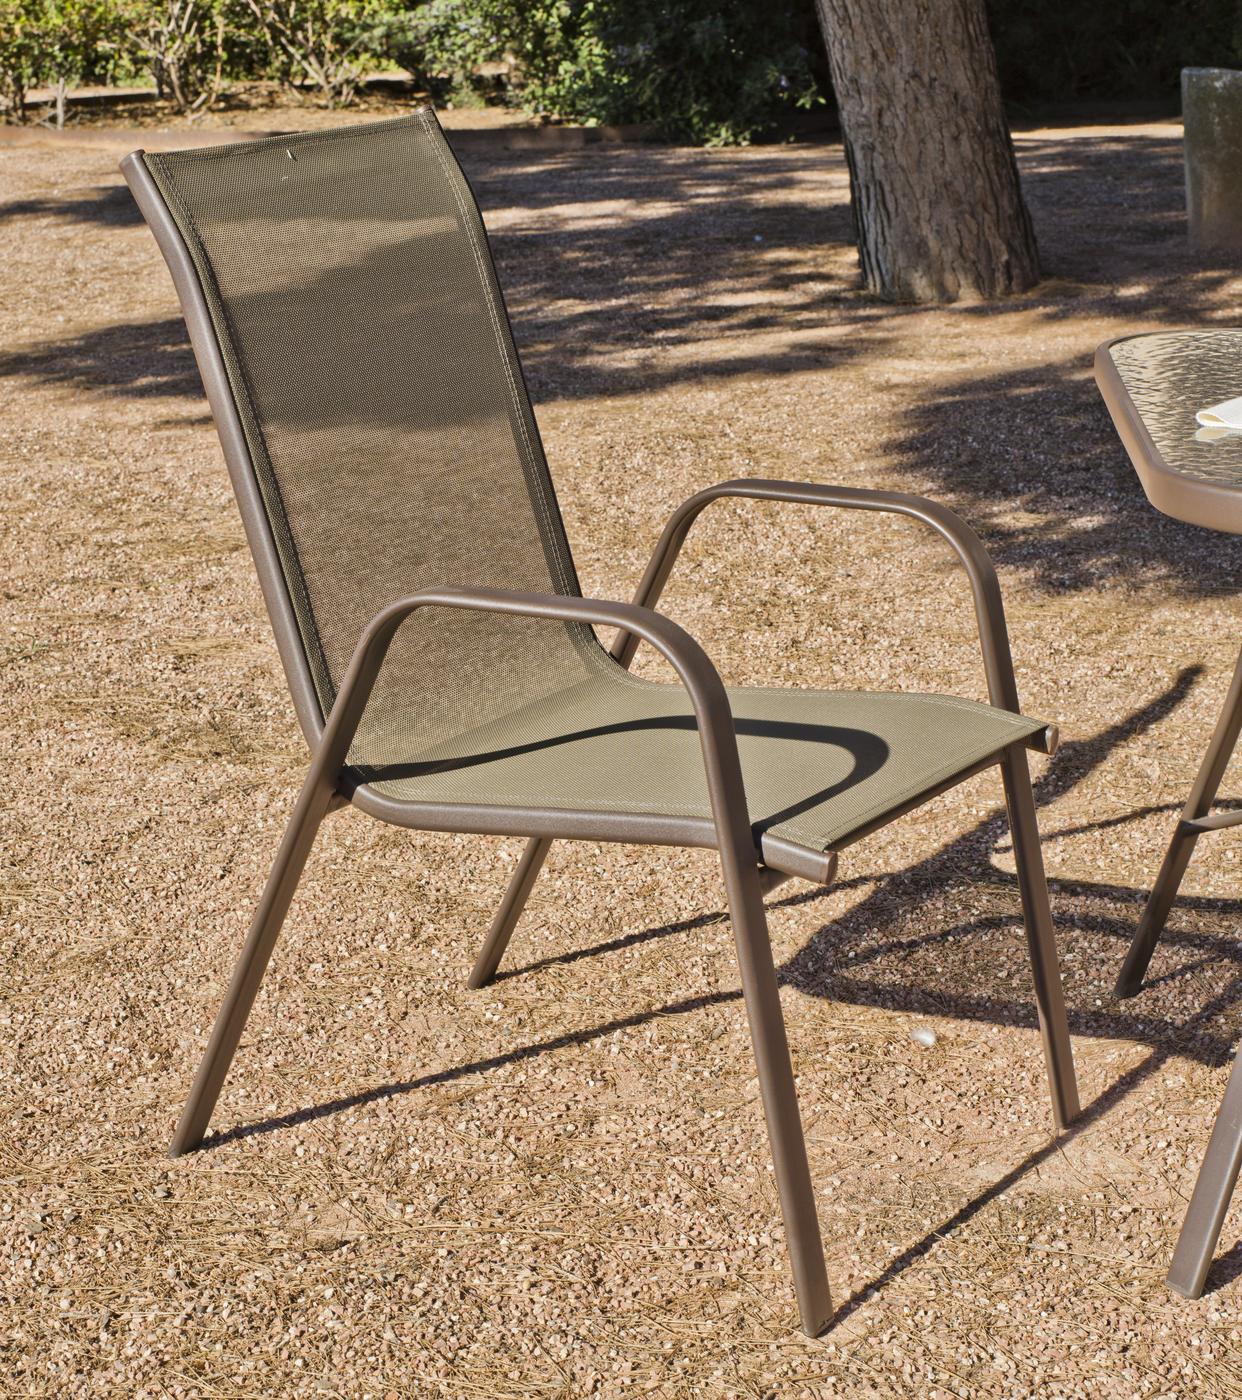 Set Acero Macao-150 - Conjunto de acero color bronce: mesa de 150 cm con tapa de cristal templado + 4 sillones apilables de acero y textilen